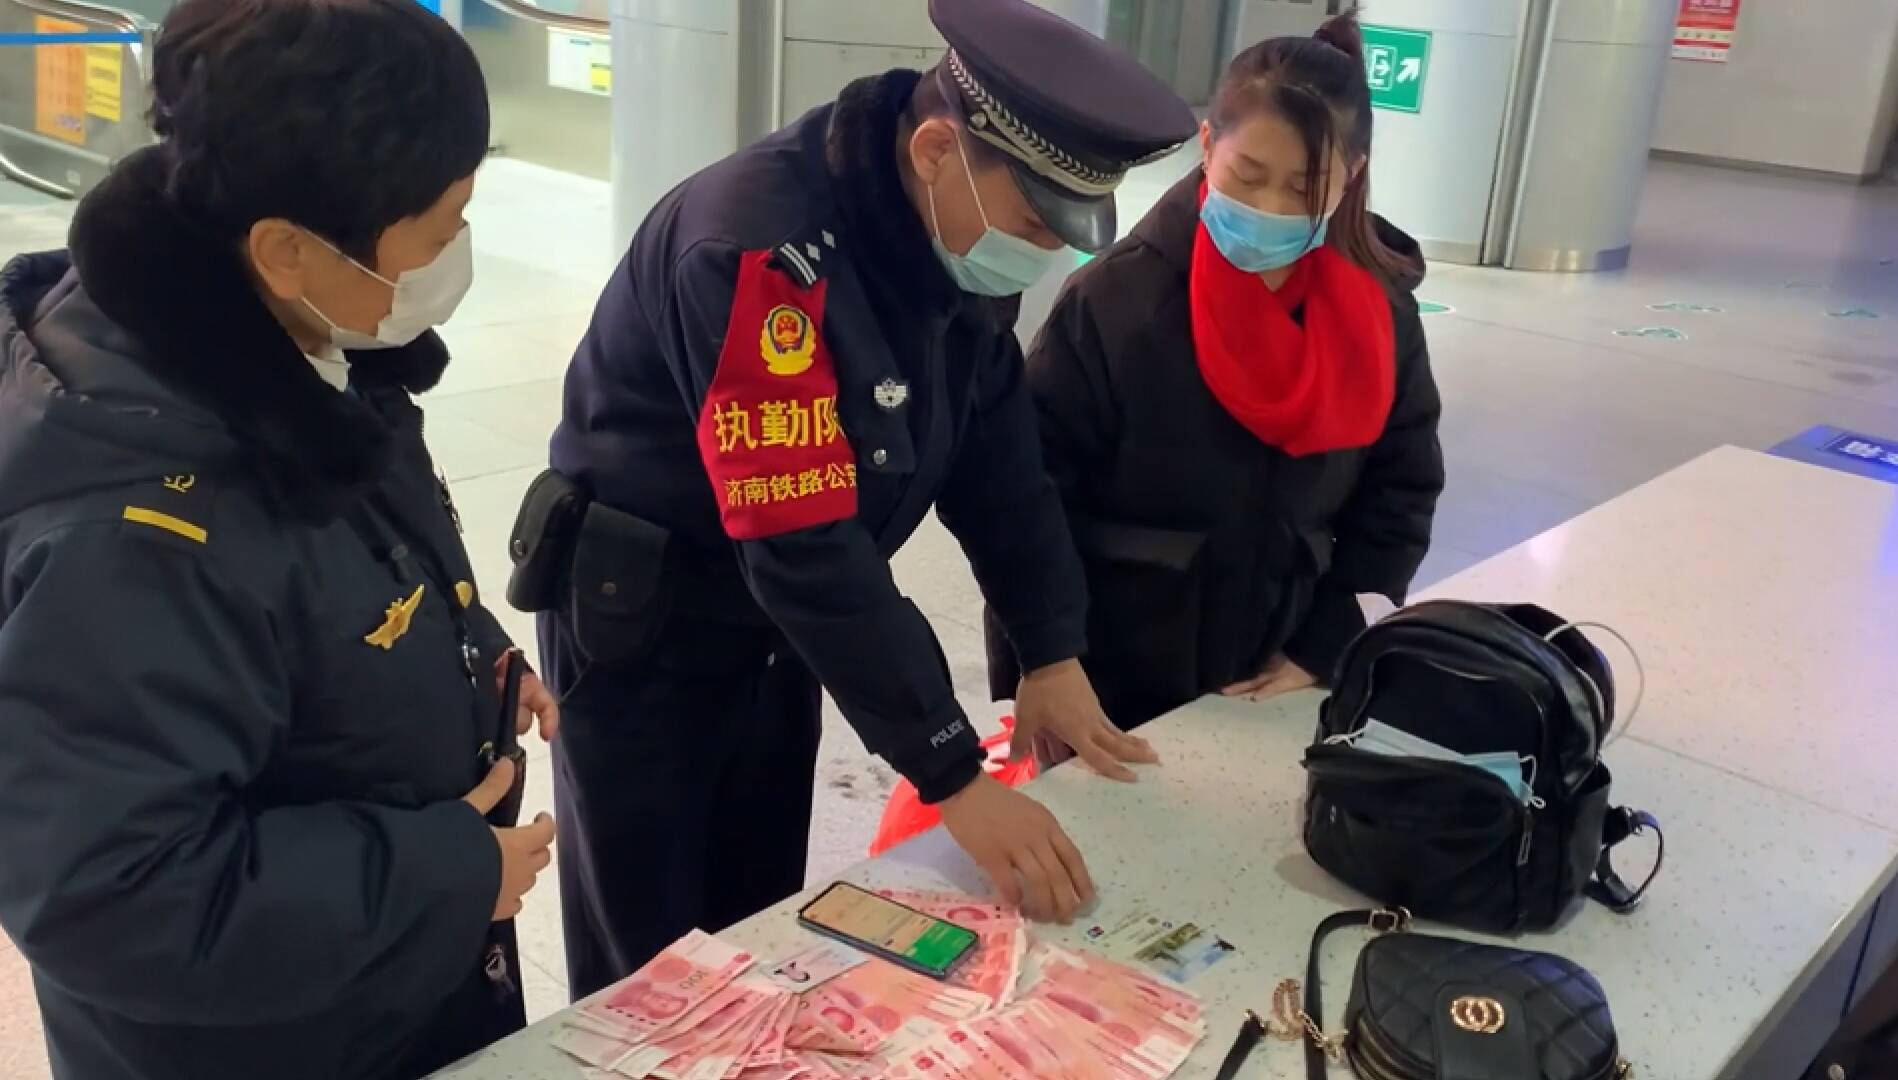 37秒丨女子在济南火车站丢失万元物品 工作人员暖心帮找回